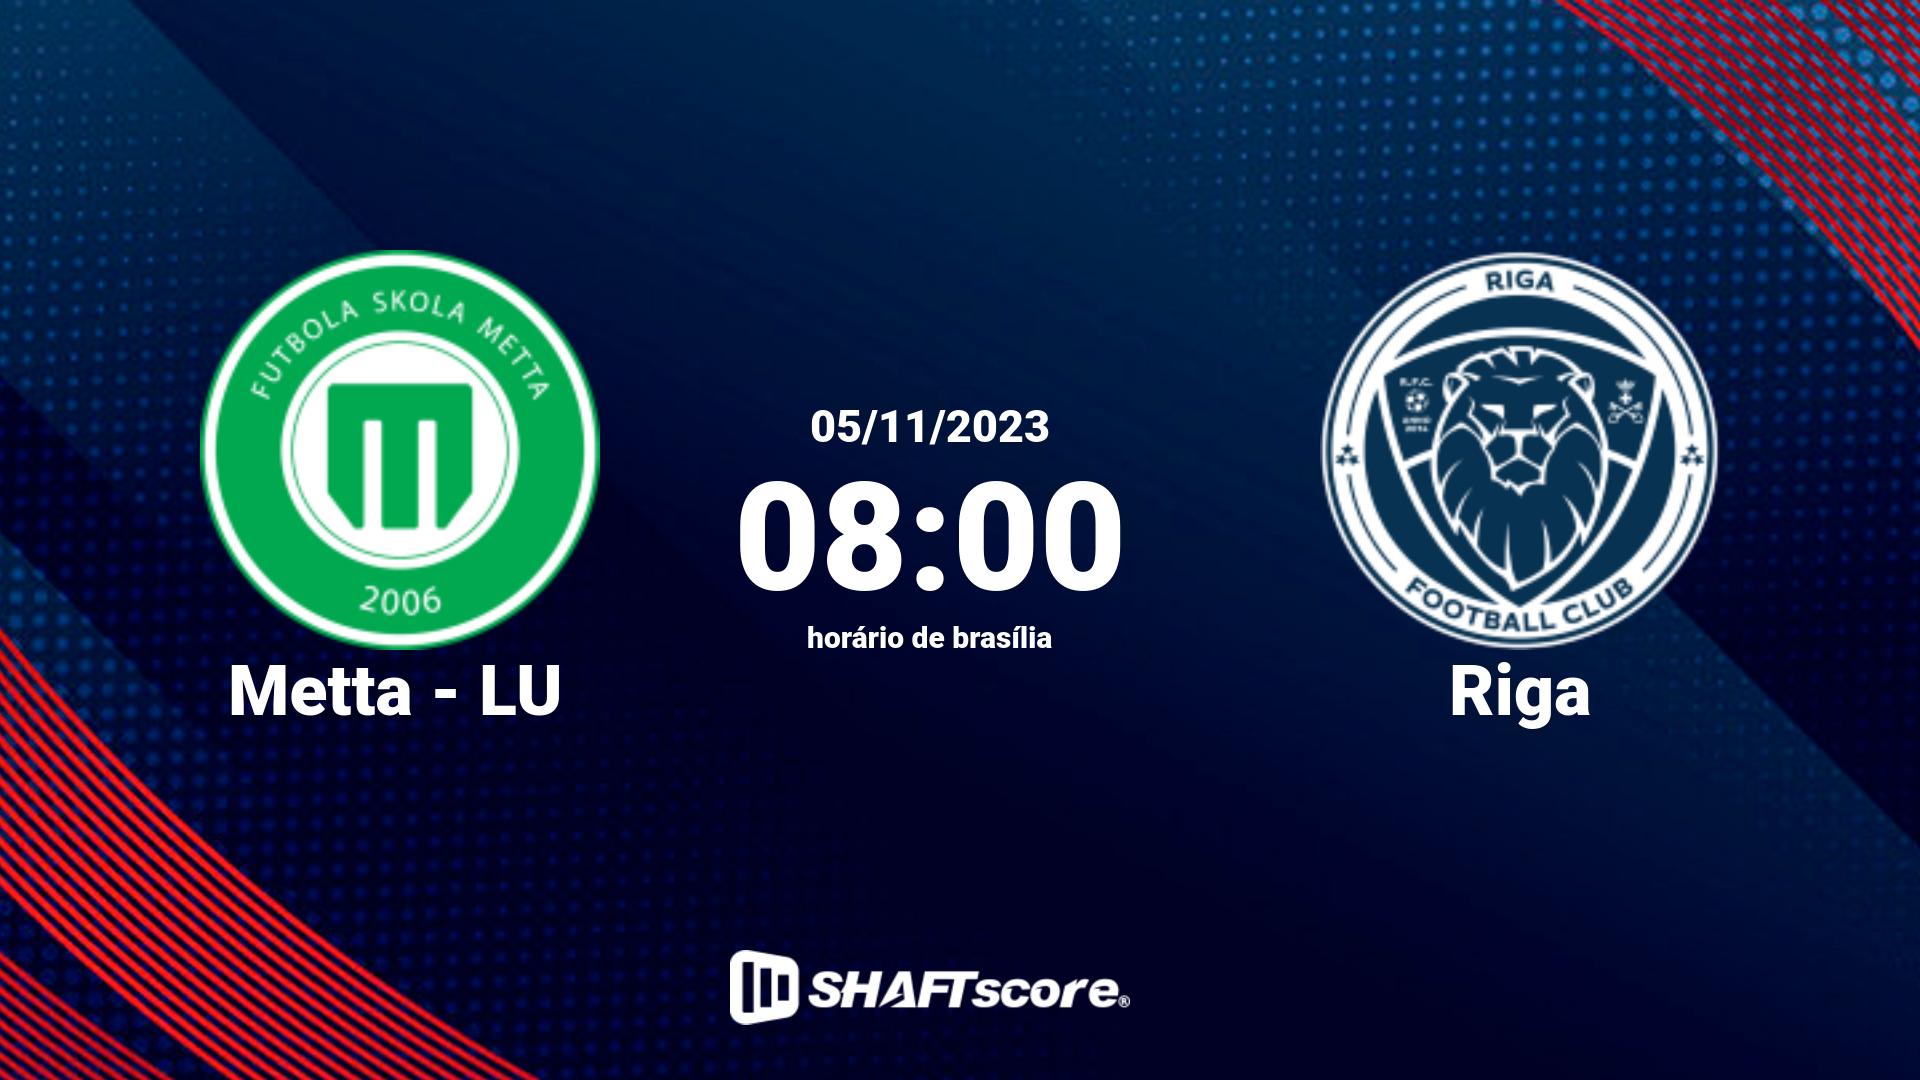 Estatísticas do jogo Metta - LU vs Riga 05.11 08:00